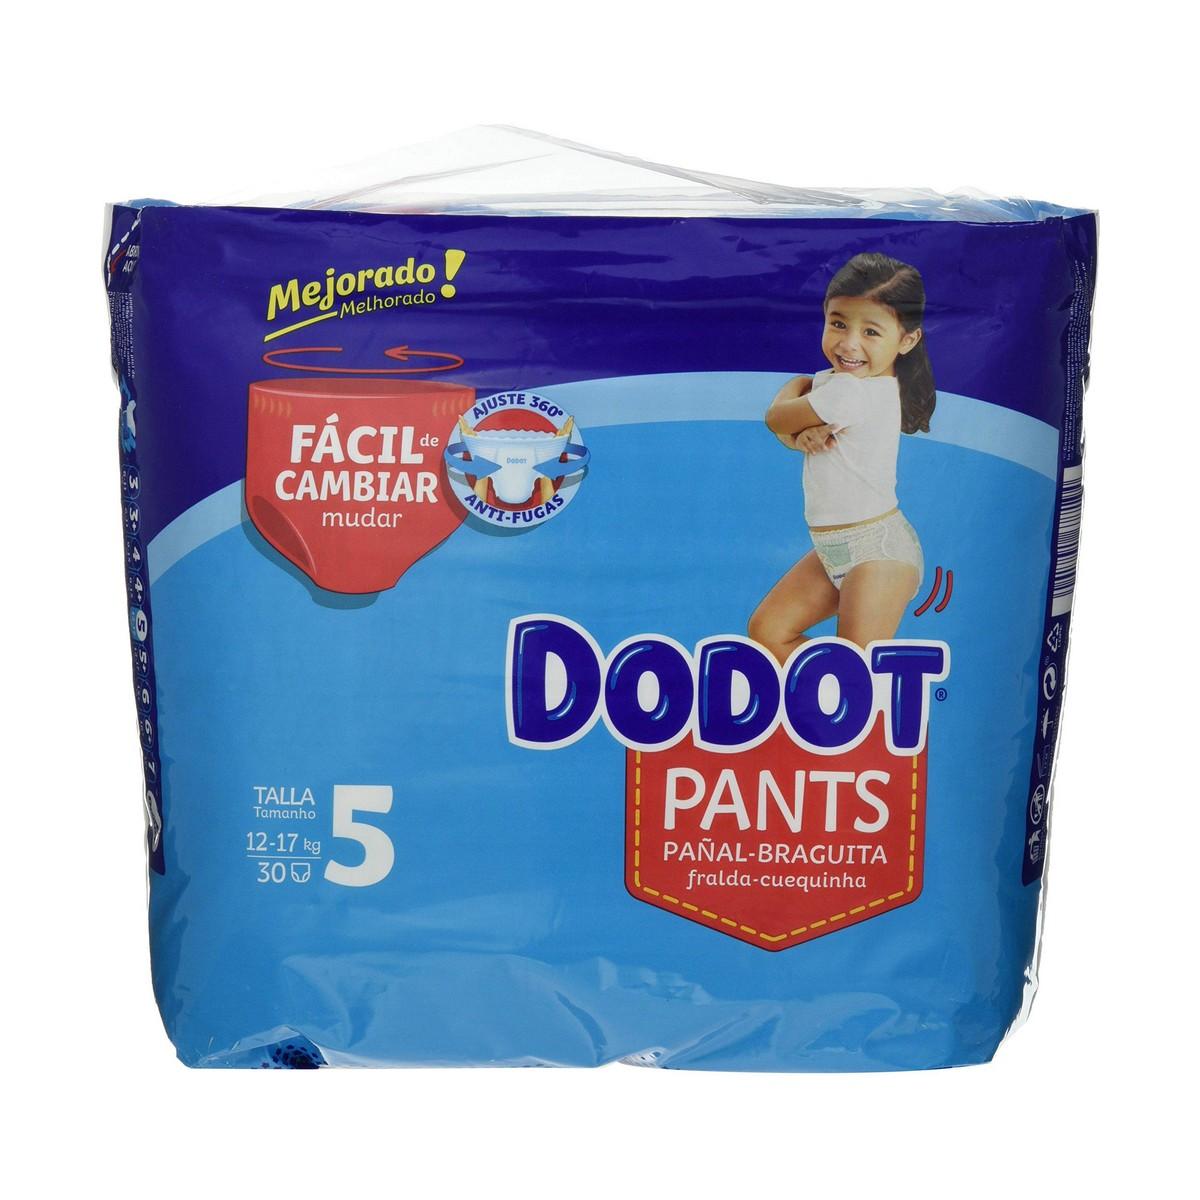 Engangsbleer Dodot Dodot Pants Størrelse 5 12-17 kg 30 enheder